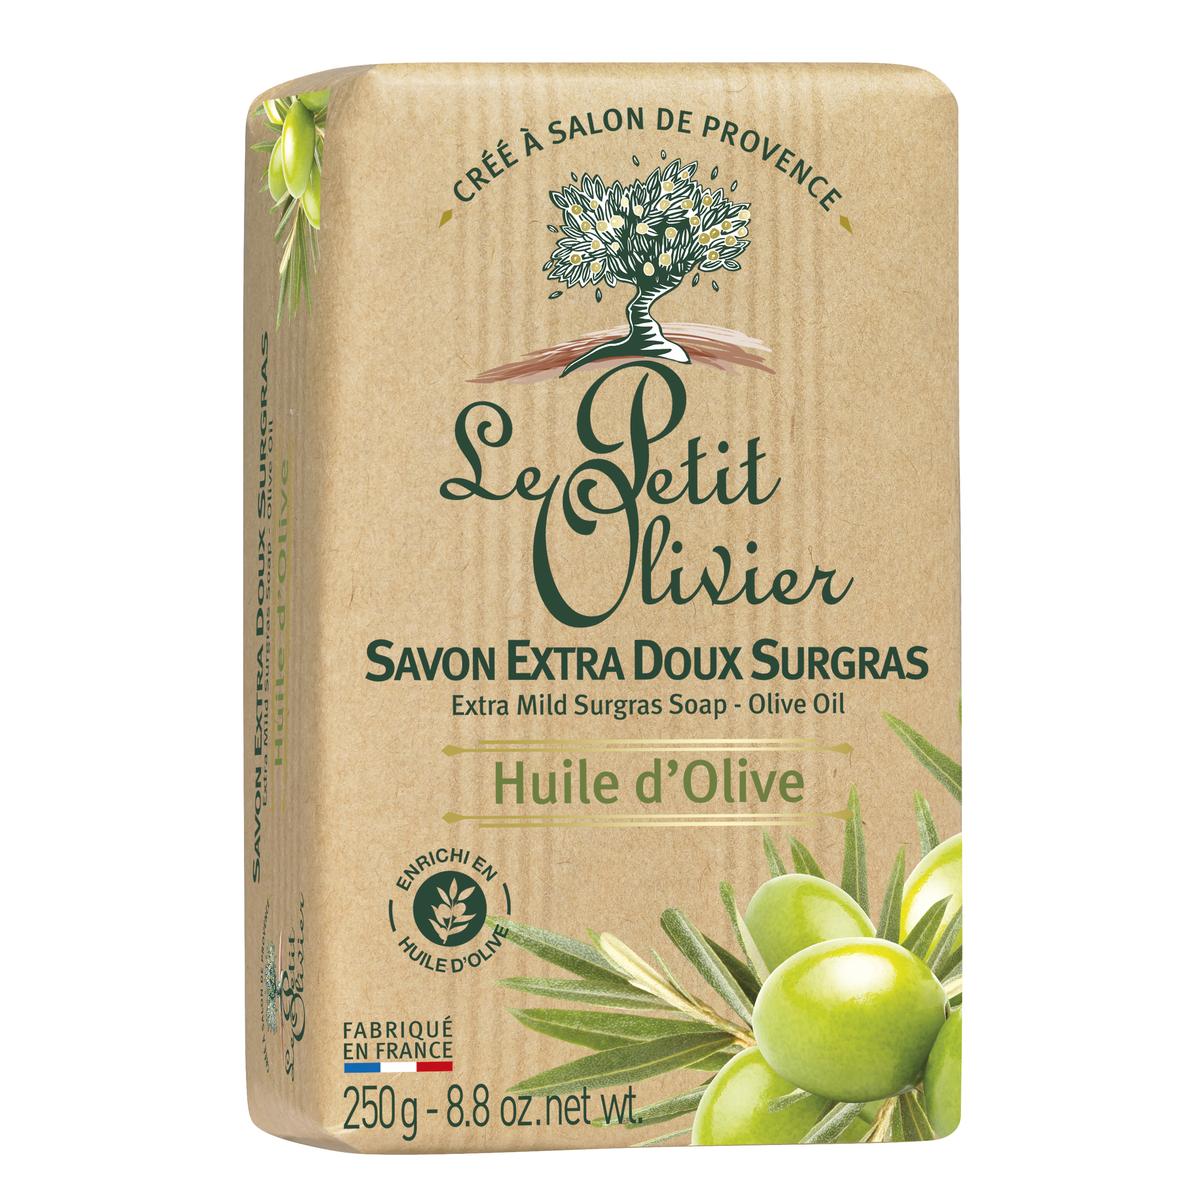 LE PETIT OLIVIER Savon extra doux surgras huile d'olive 250g -J71